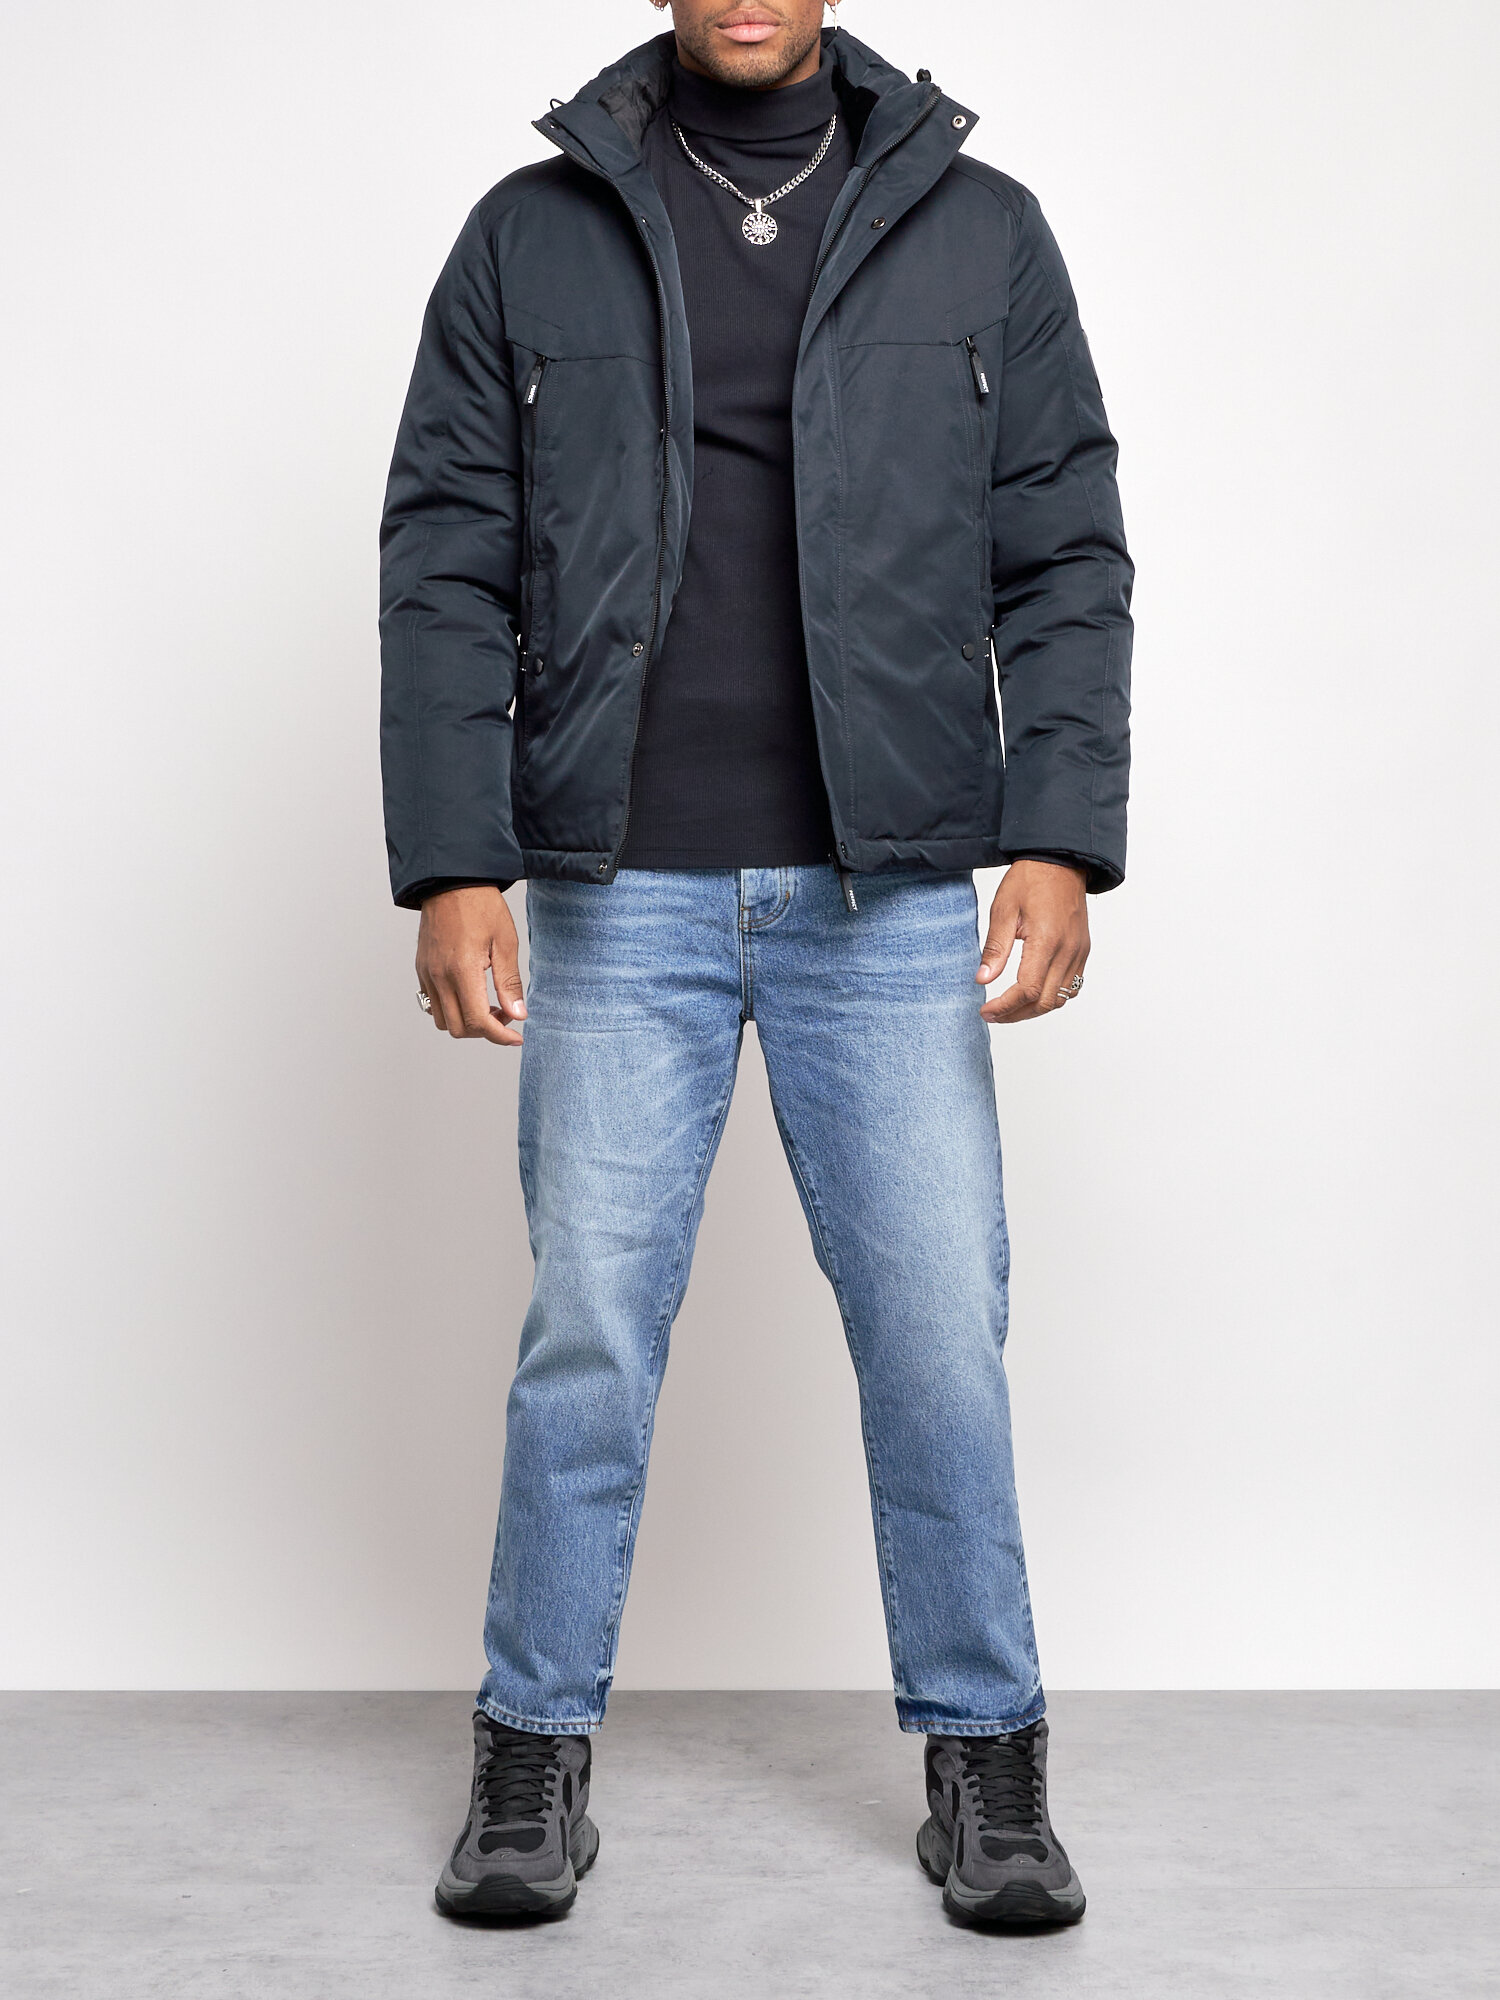 Куртка мужская зимняя с капюшоном спортивная великан AD8332Ch 58